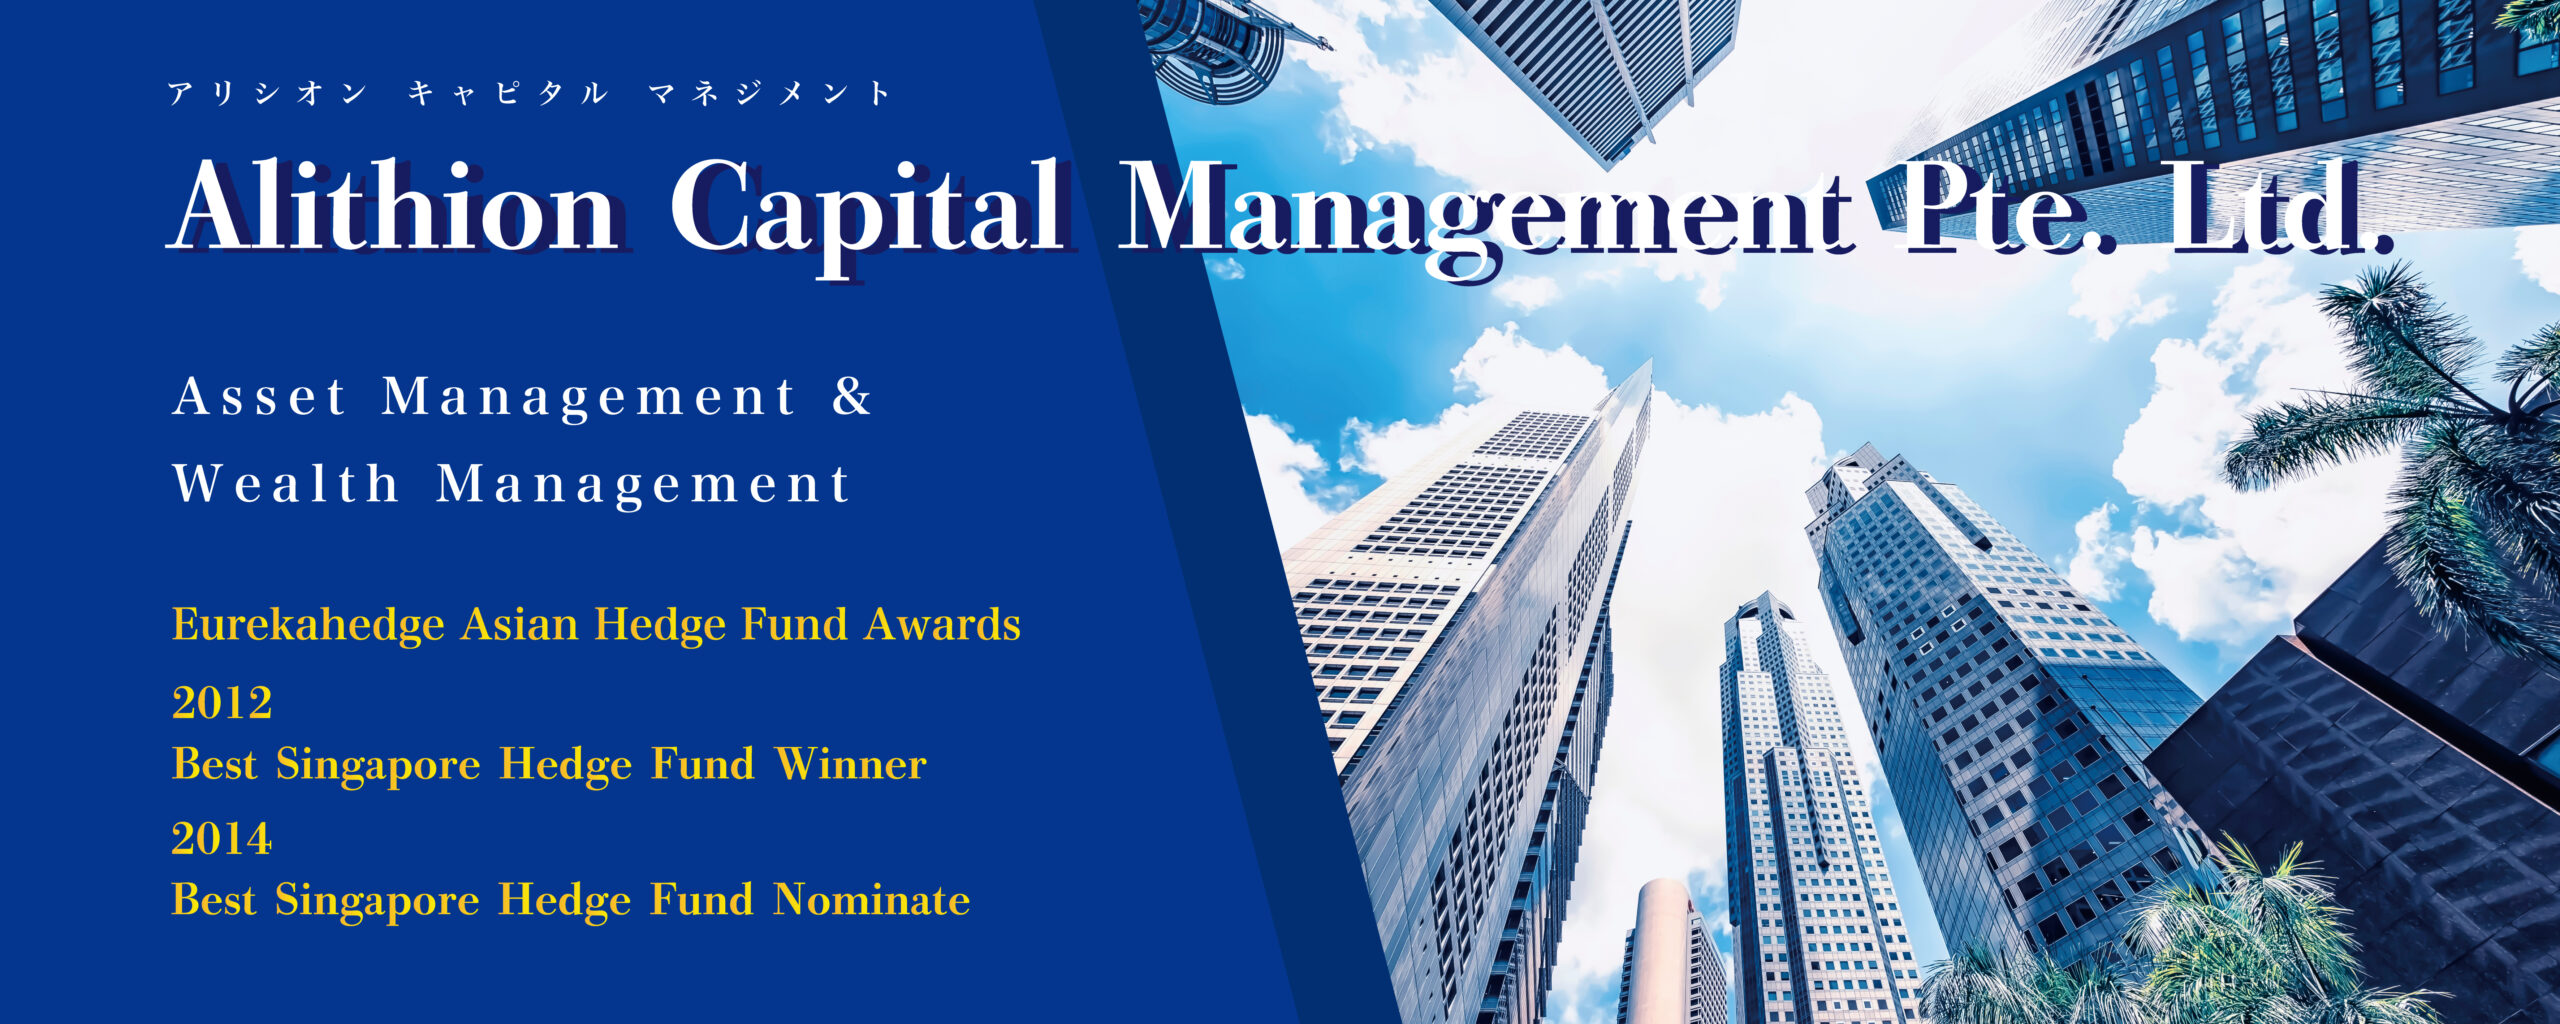 Alithion-Capital-Management-Pte.-Ltd.